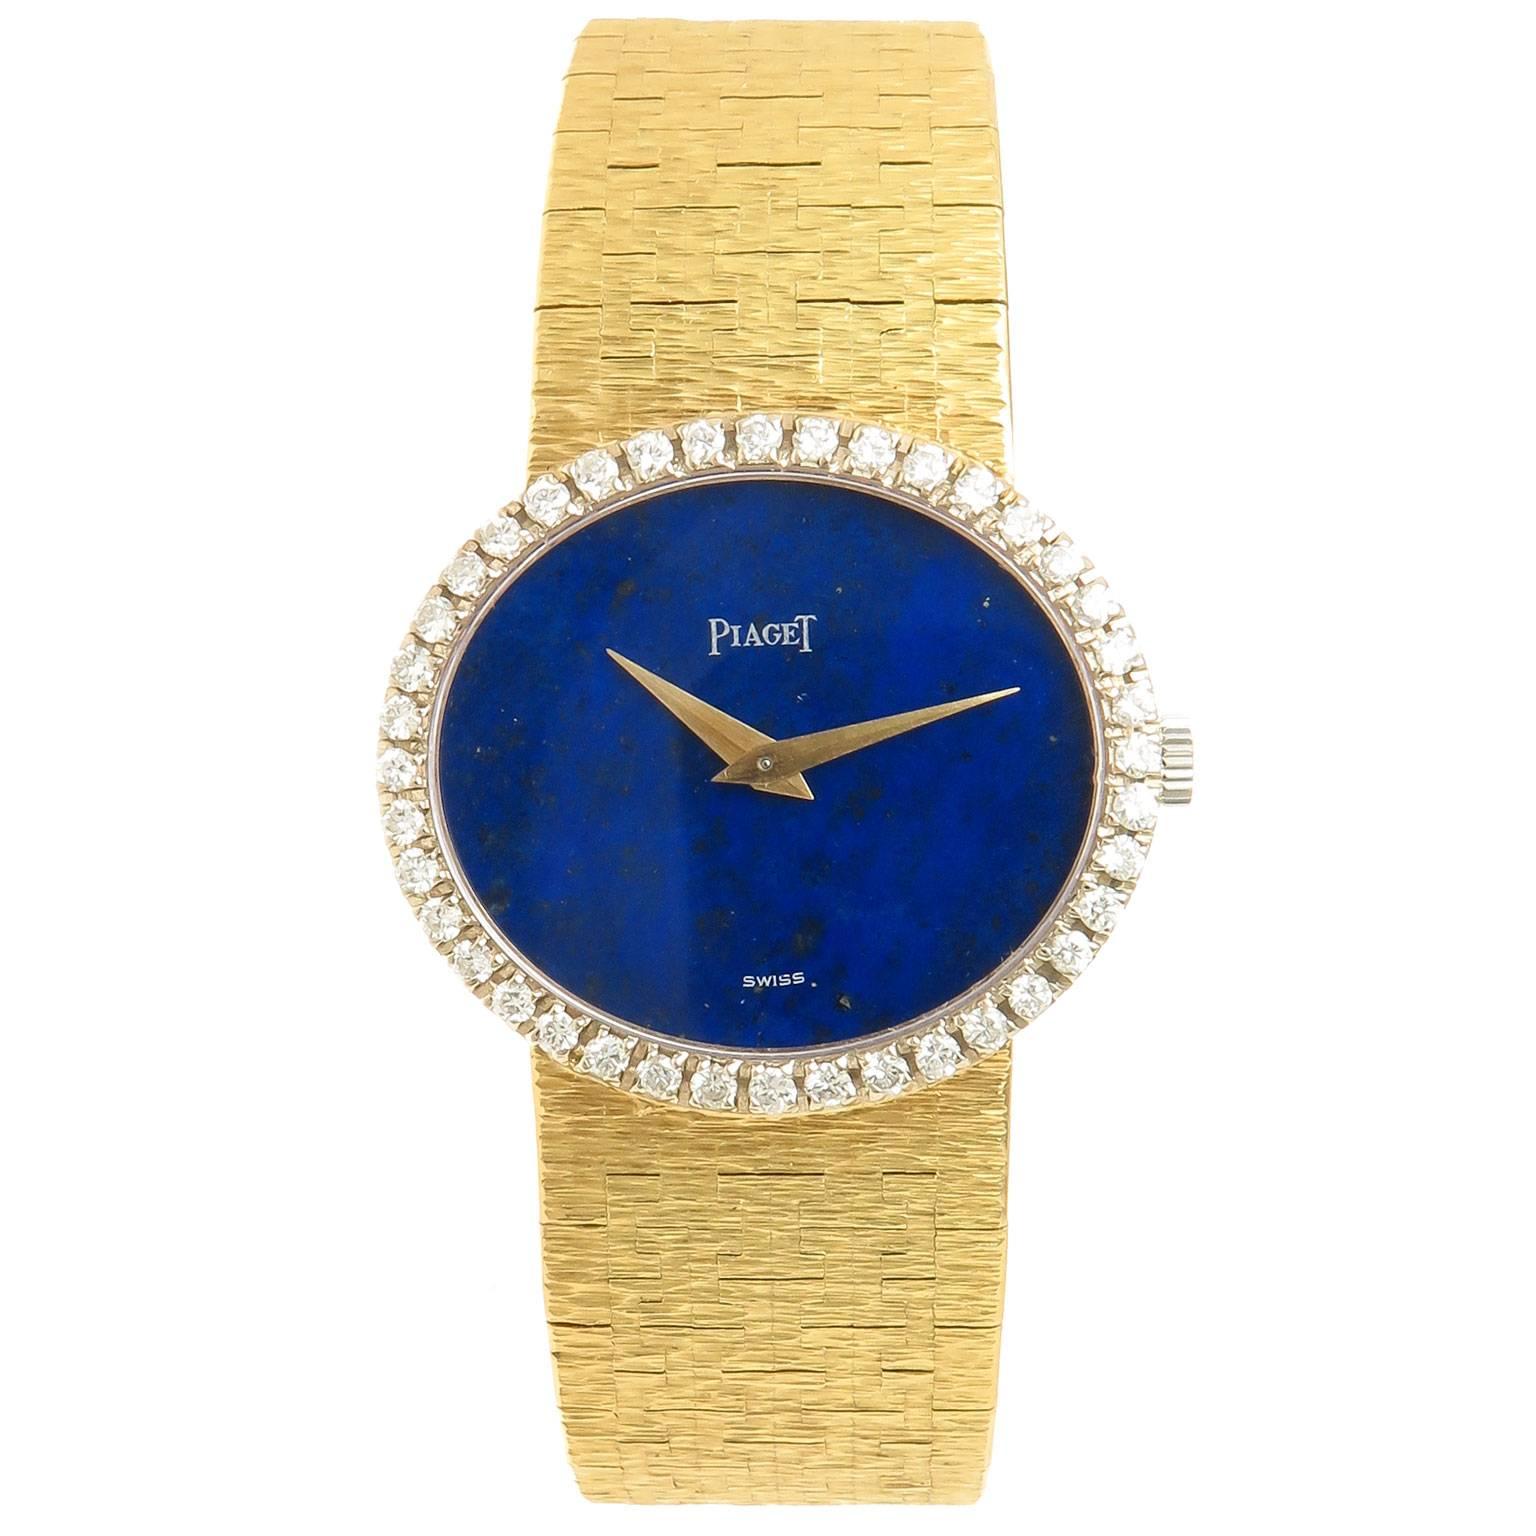 Piaget yellow Gold Diamond and Lapis mechanical Wrist watch